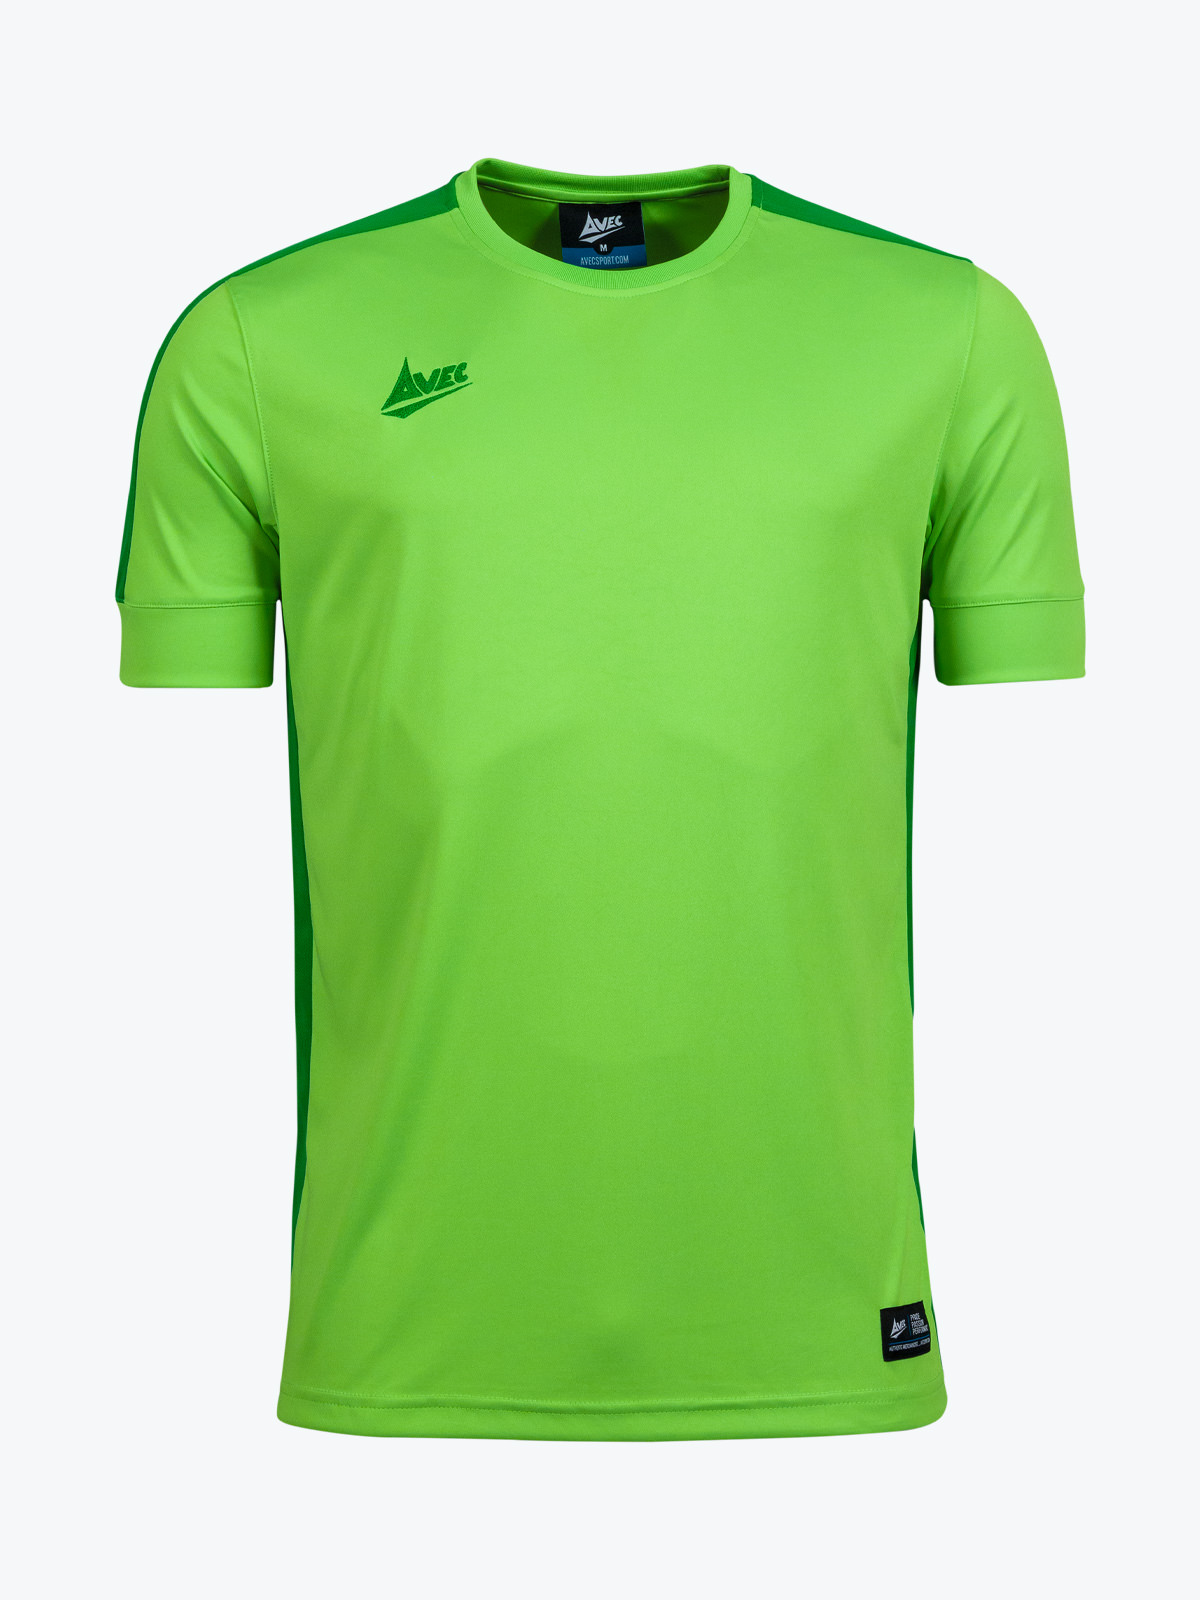 jersey green